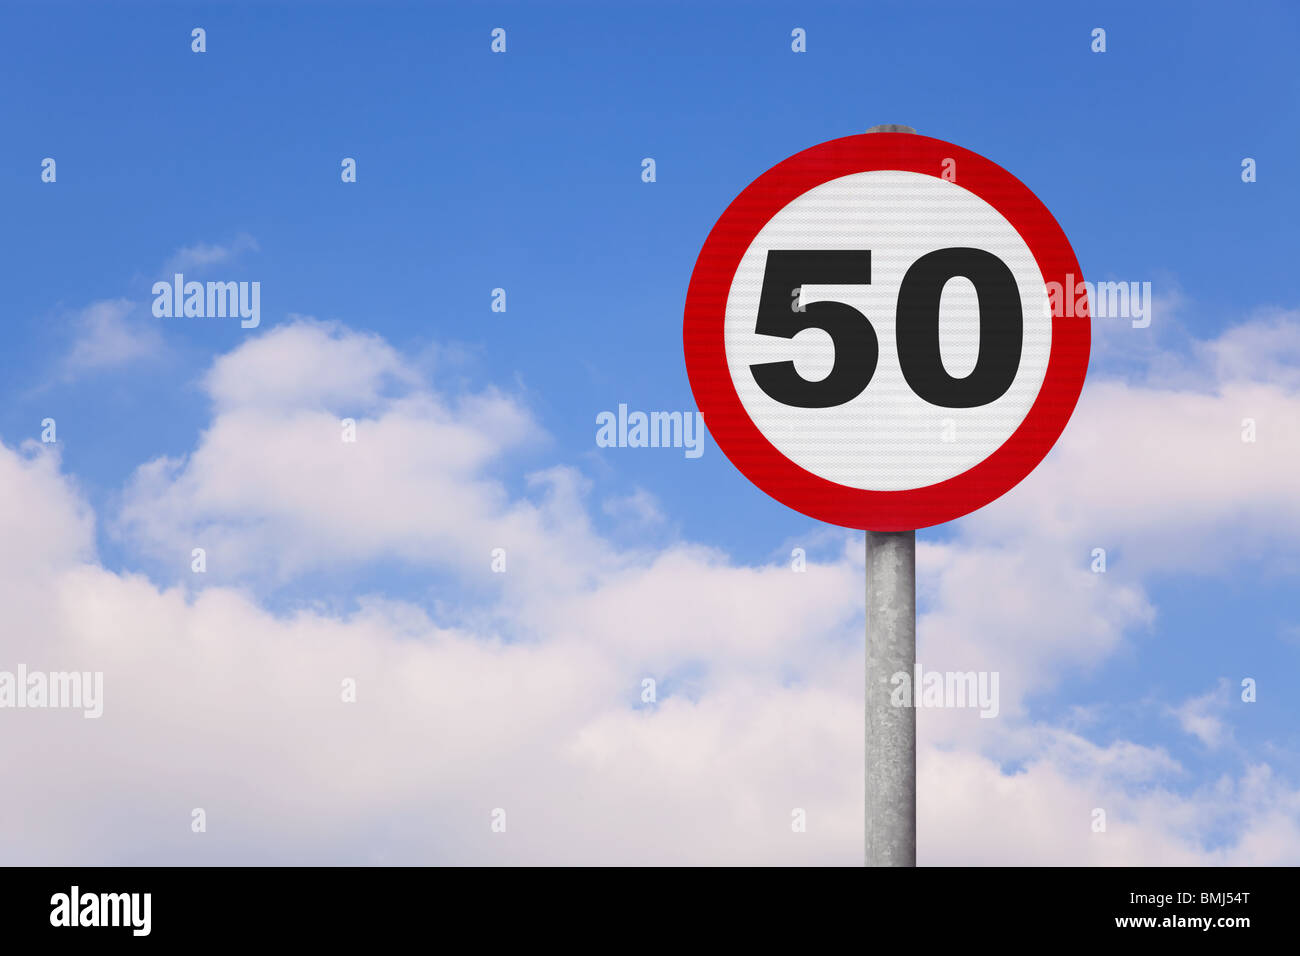 Un round cartello stradale con il numero 50 su di esso contro un blu cielo nuvoloso. Foto Stock